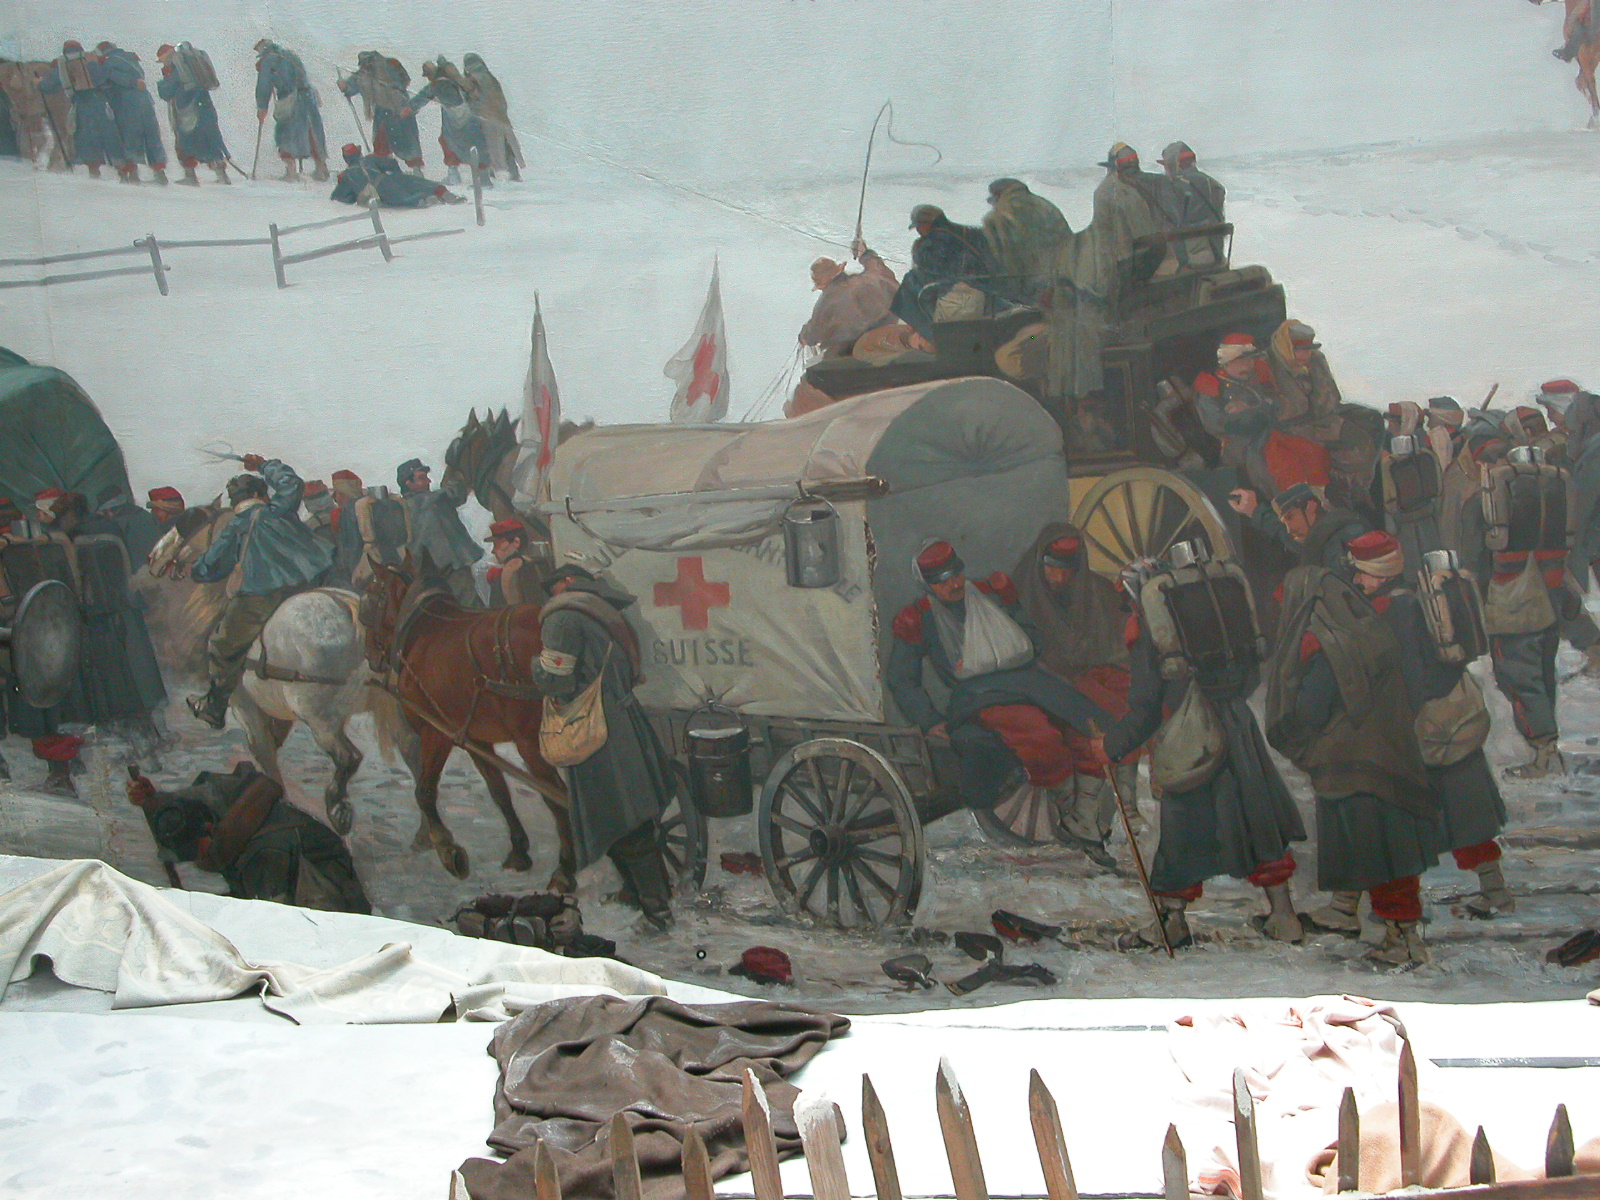 Extrait du tableau "Panorama Bourbaki". On y voit une voiture avec des chevaux attelés devant, des blessés à l'arrière.